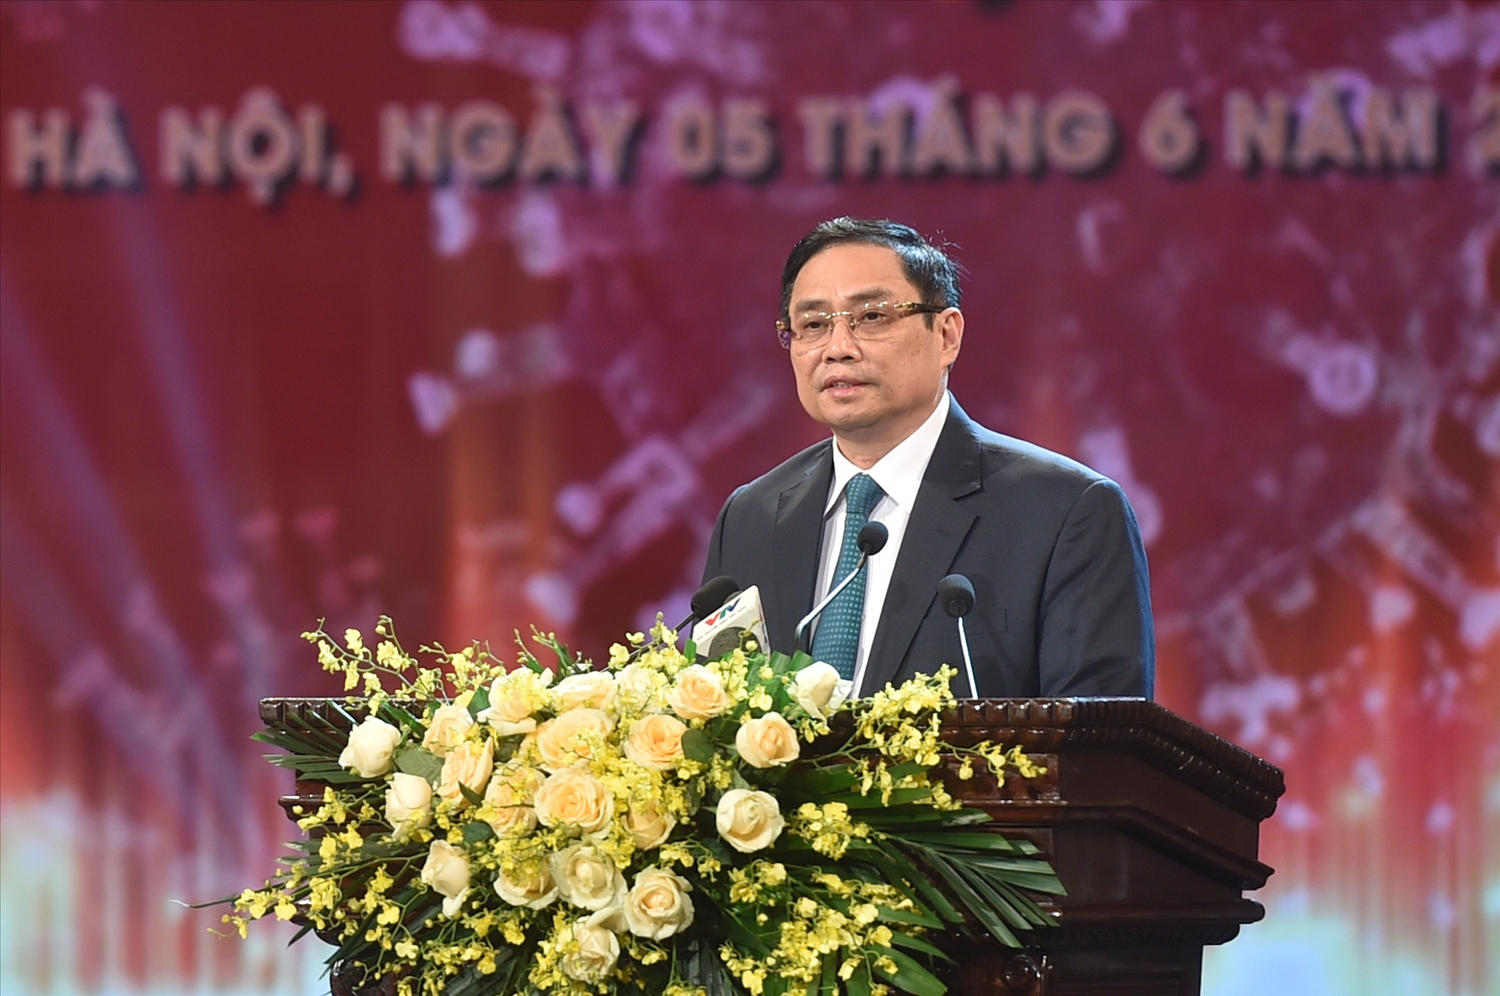 Thủ tướng Phạm Minh Chính khẳng định trong phương pháp chống dịch, chúng ta không lựa chọn giải pháp dễ làm mà có thể ảnh hưởng đến cuộc sống của người dân và phát triển kinh tế - xã hội. Ảnh VGP